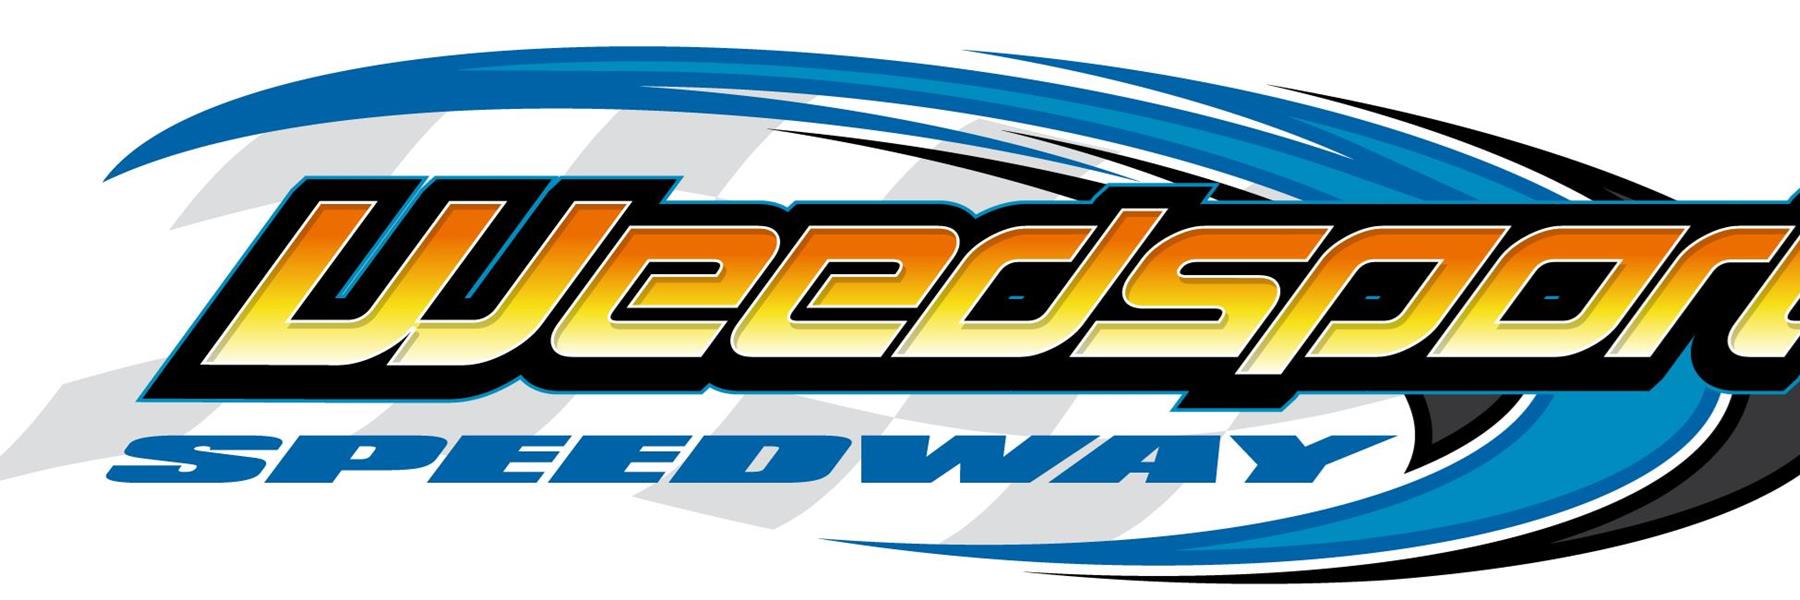 7/24/2022 - Weedsport Speedway 